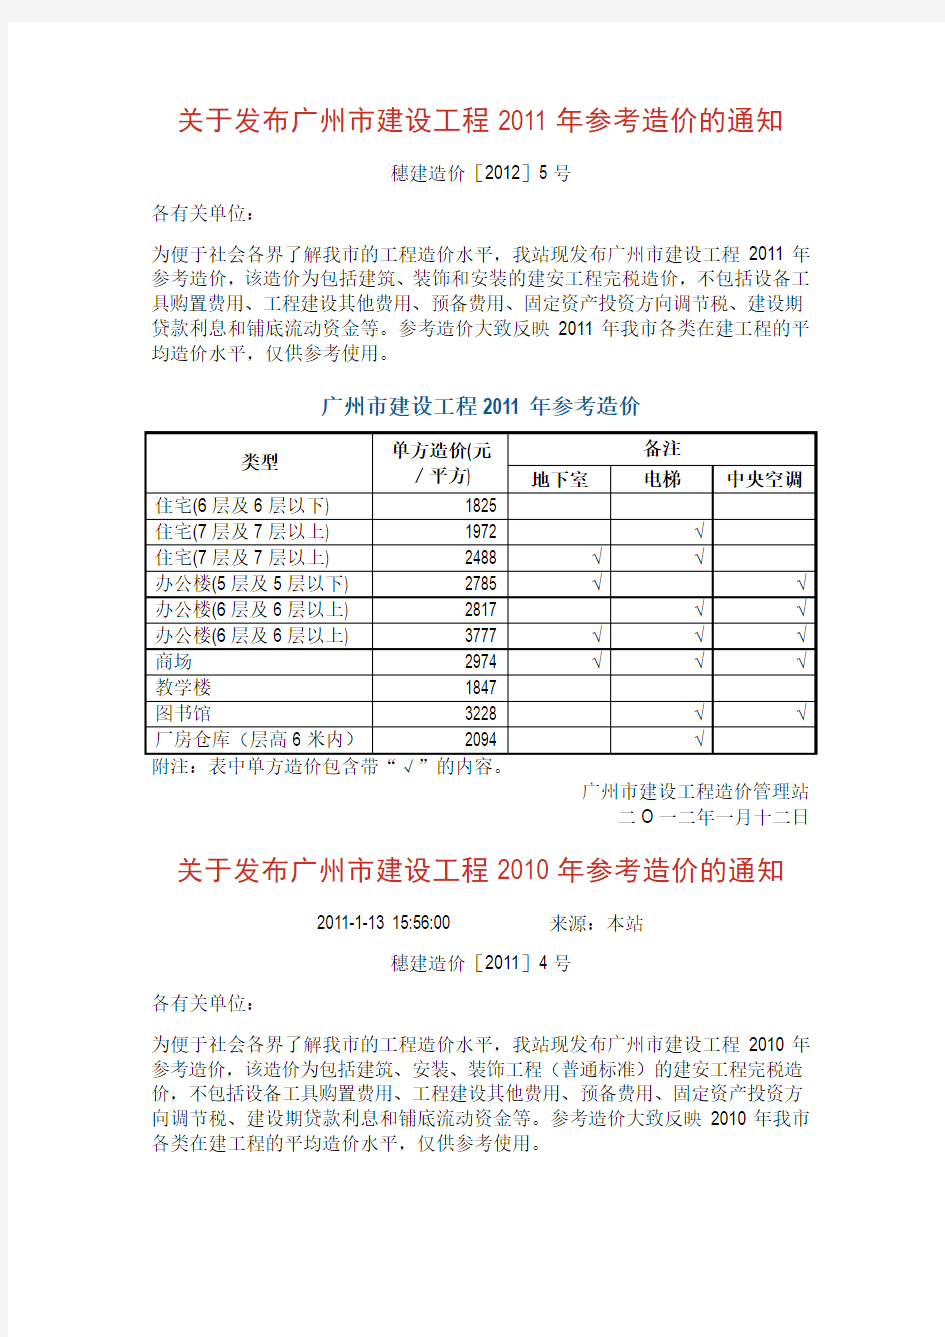 关于发布广州市建设工程2008-2011年参考造价的通知